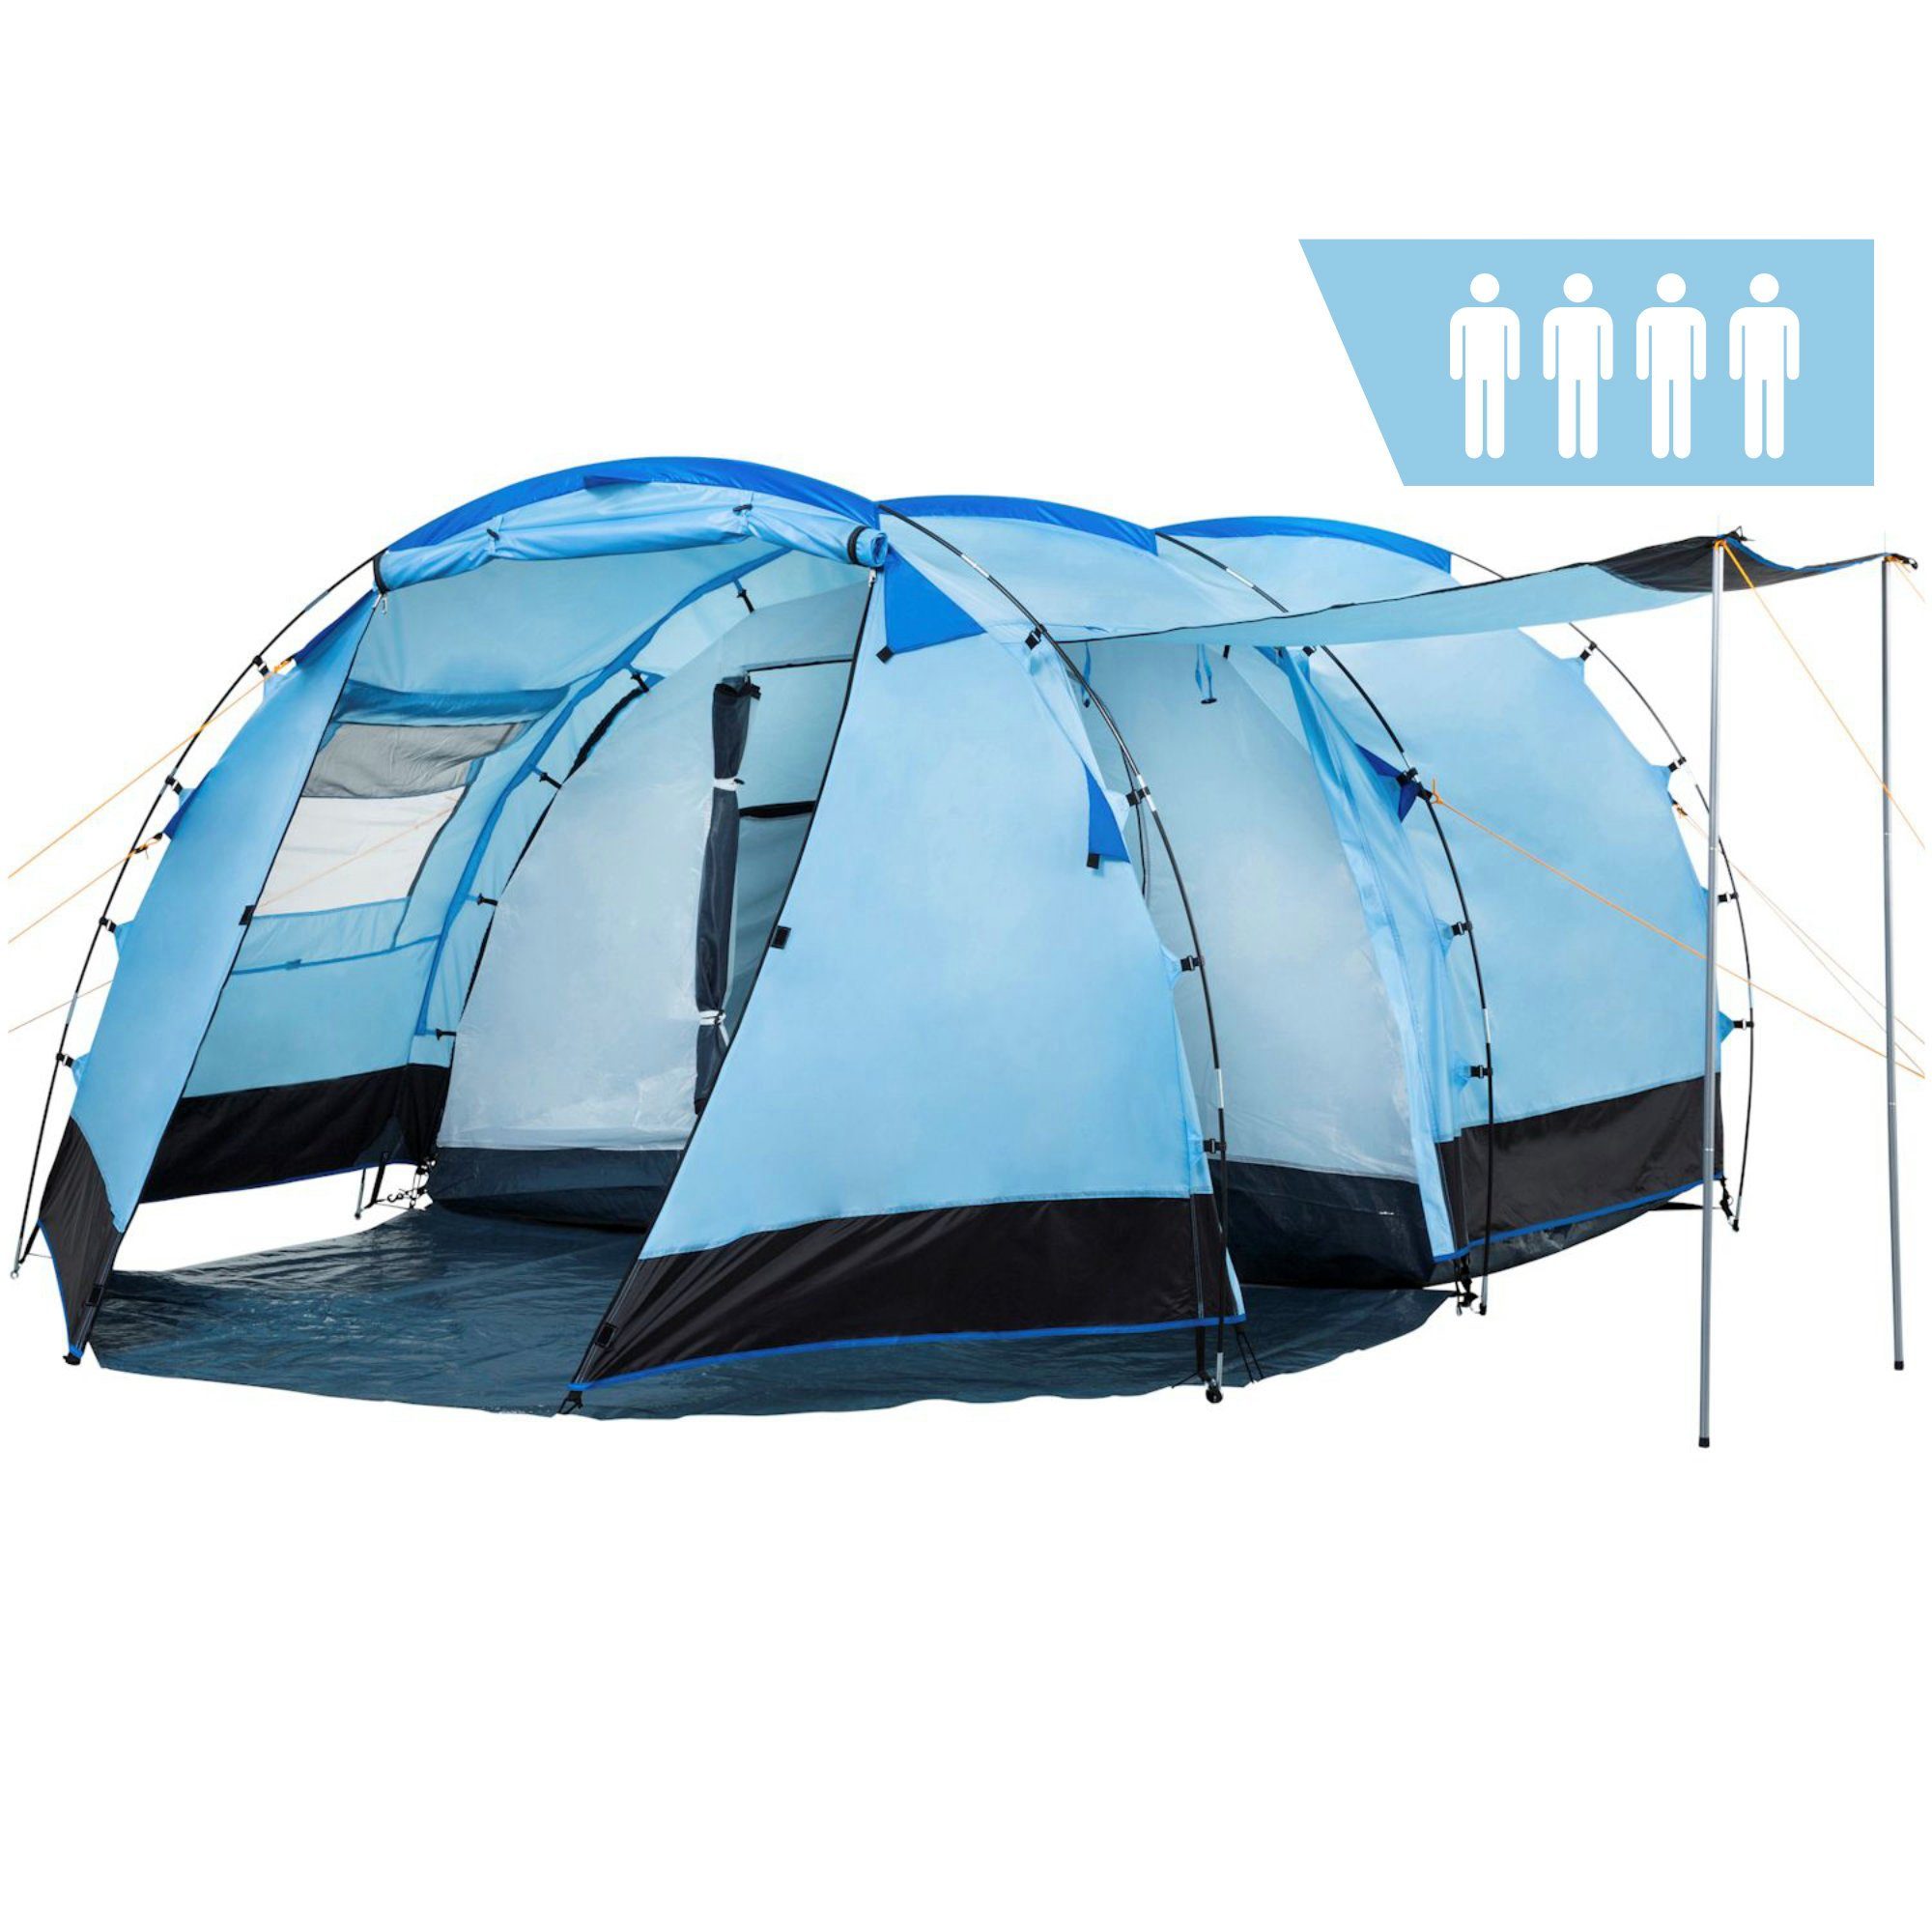 CampFeuer Tunnelzelt Zelt Super+ für 4 Personen, Blau / Schwarz, Personen: 4